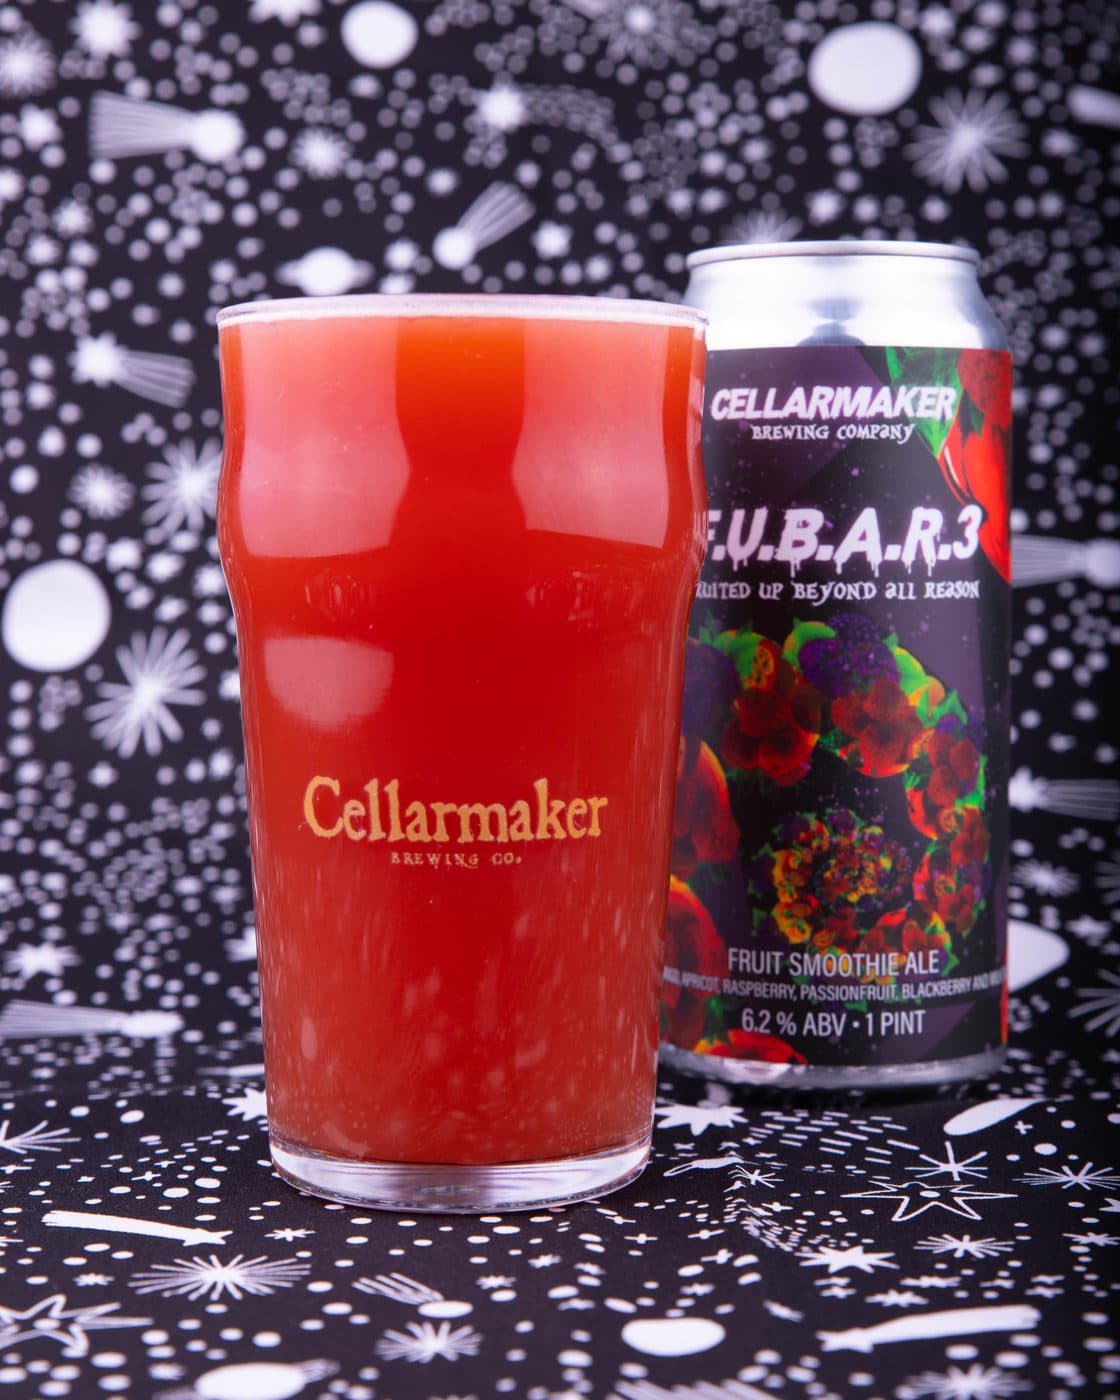 Cellarmaker Beer